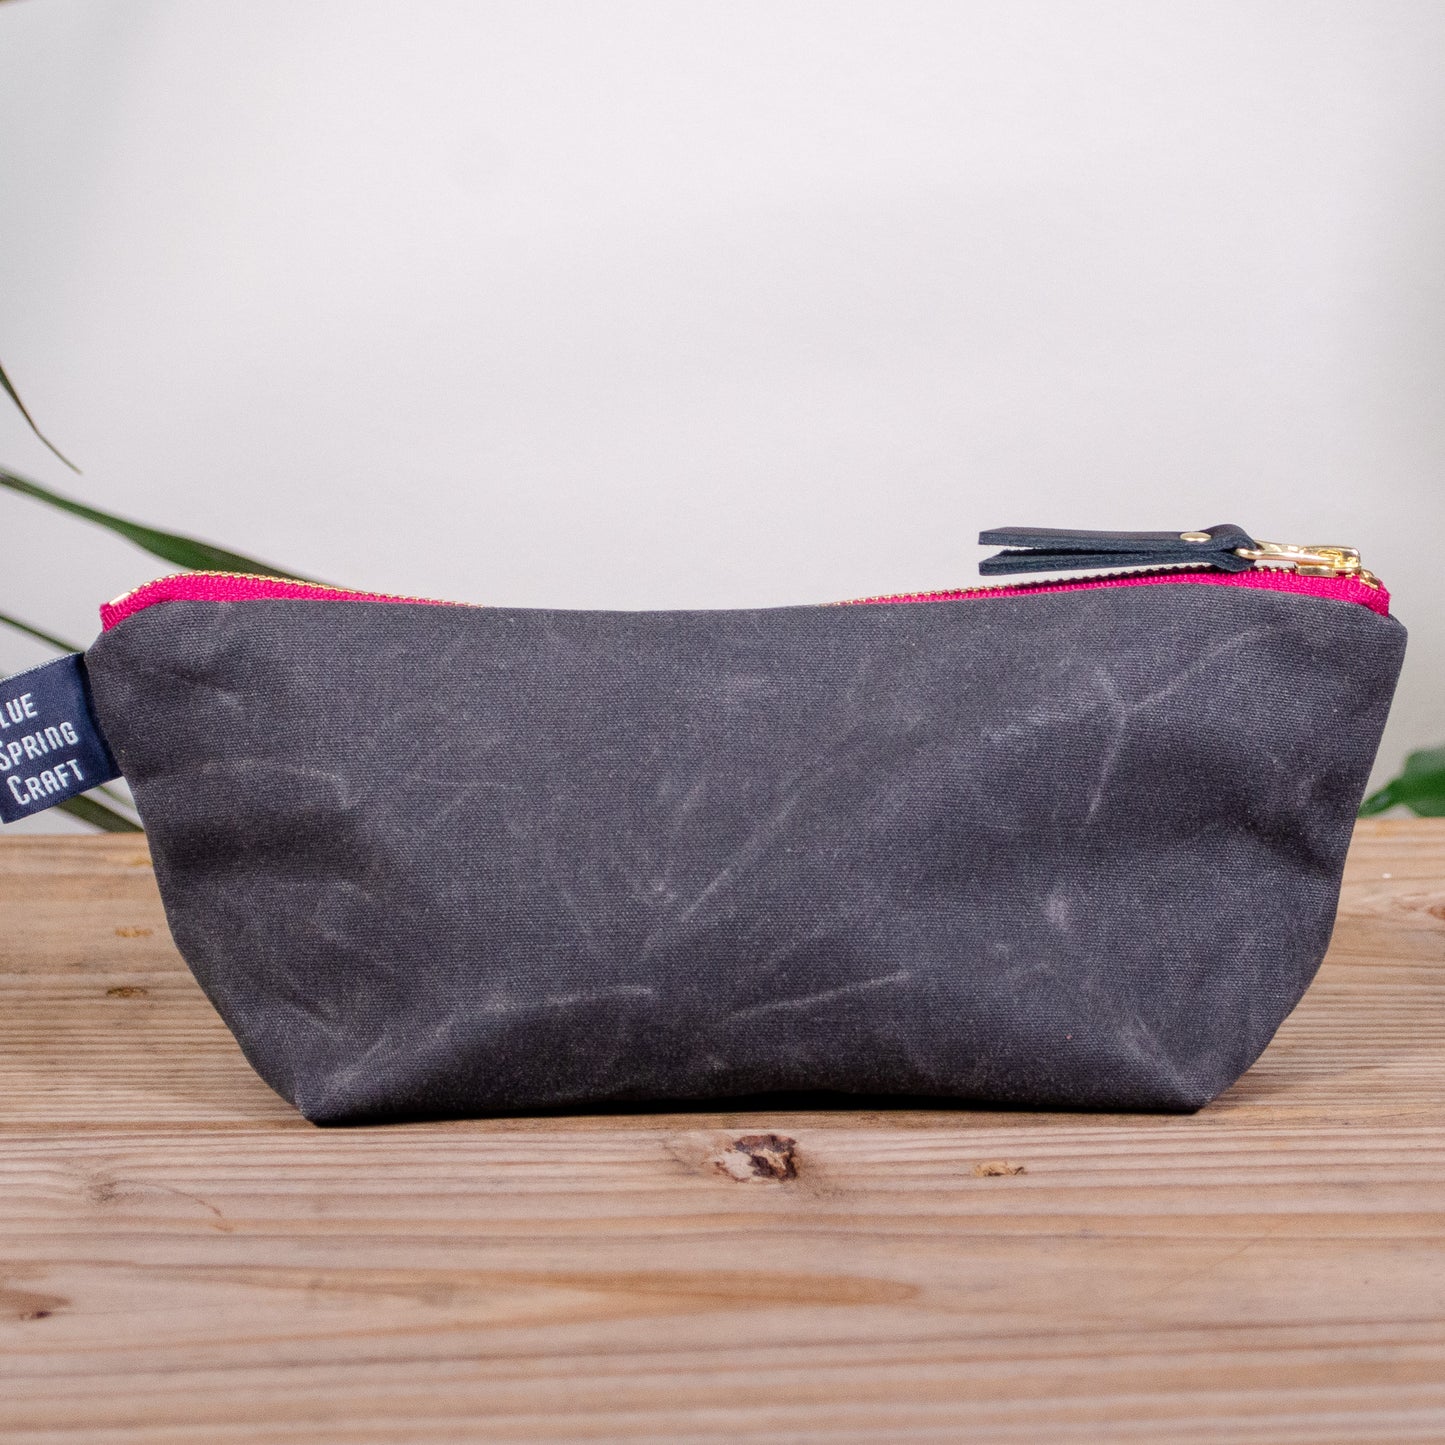 Charcoal Grey Bag No. 1 - The Essentials Bag